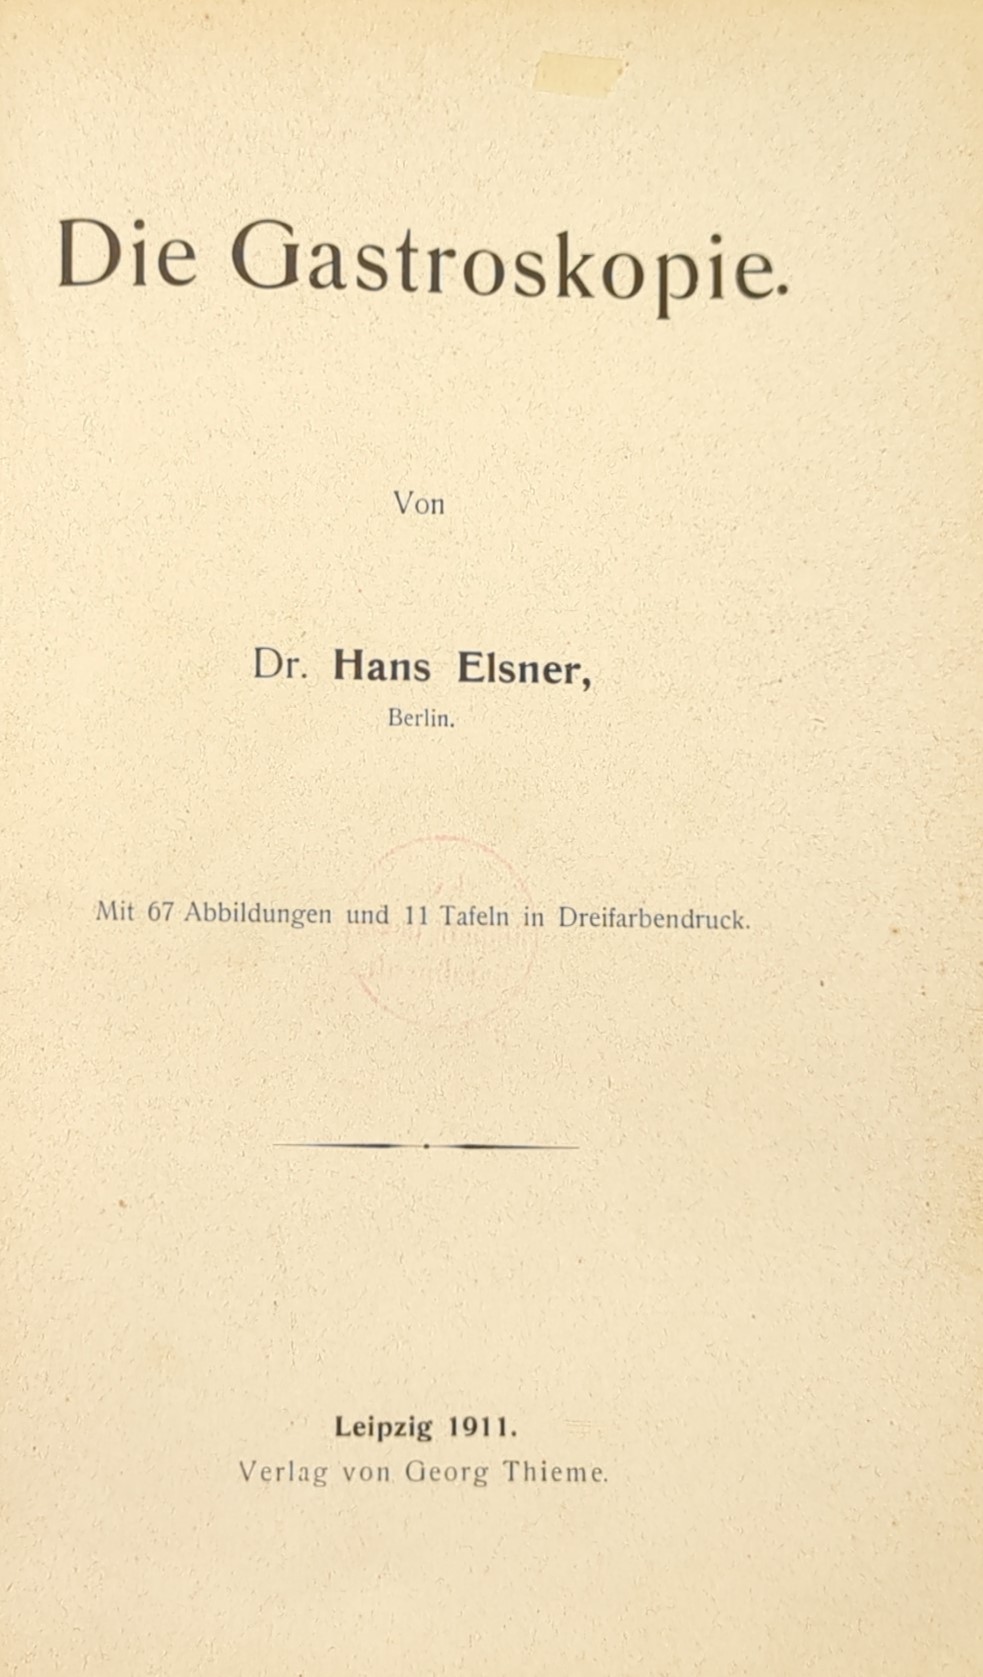 Thieme Verlag Leipzig 1911. Quelle: Staatsbibliothek Berlin